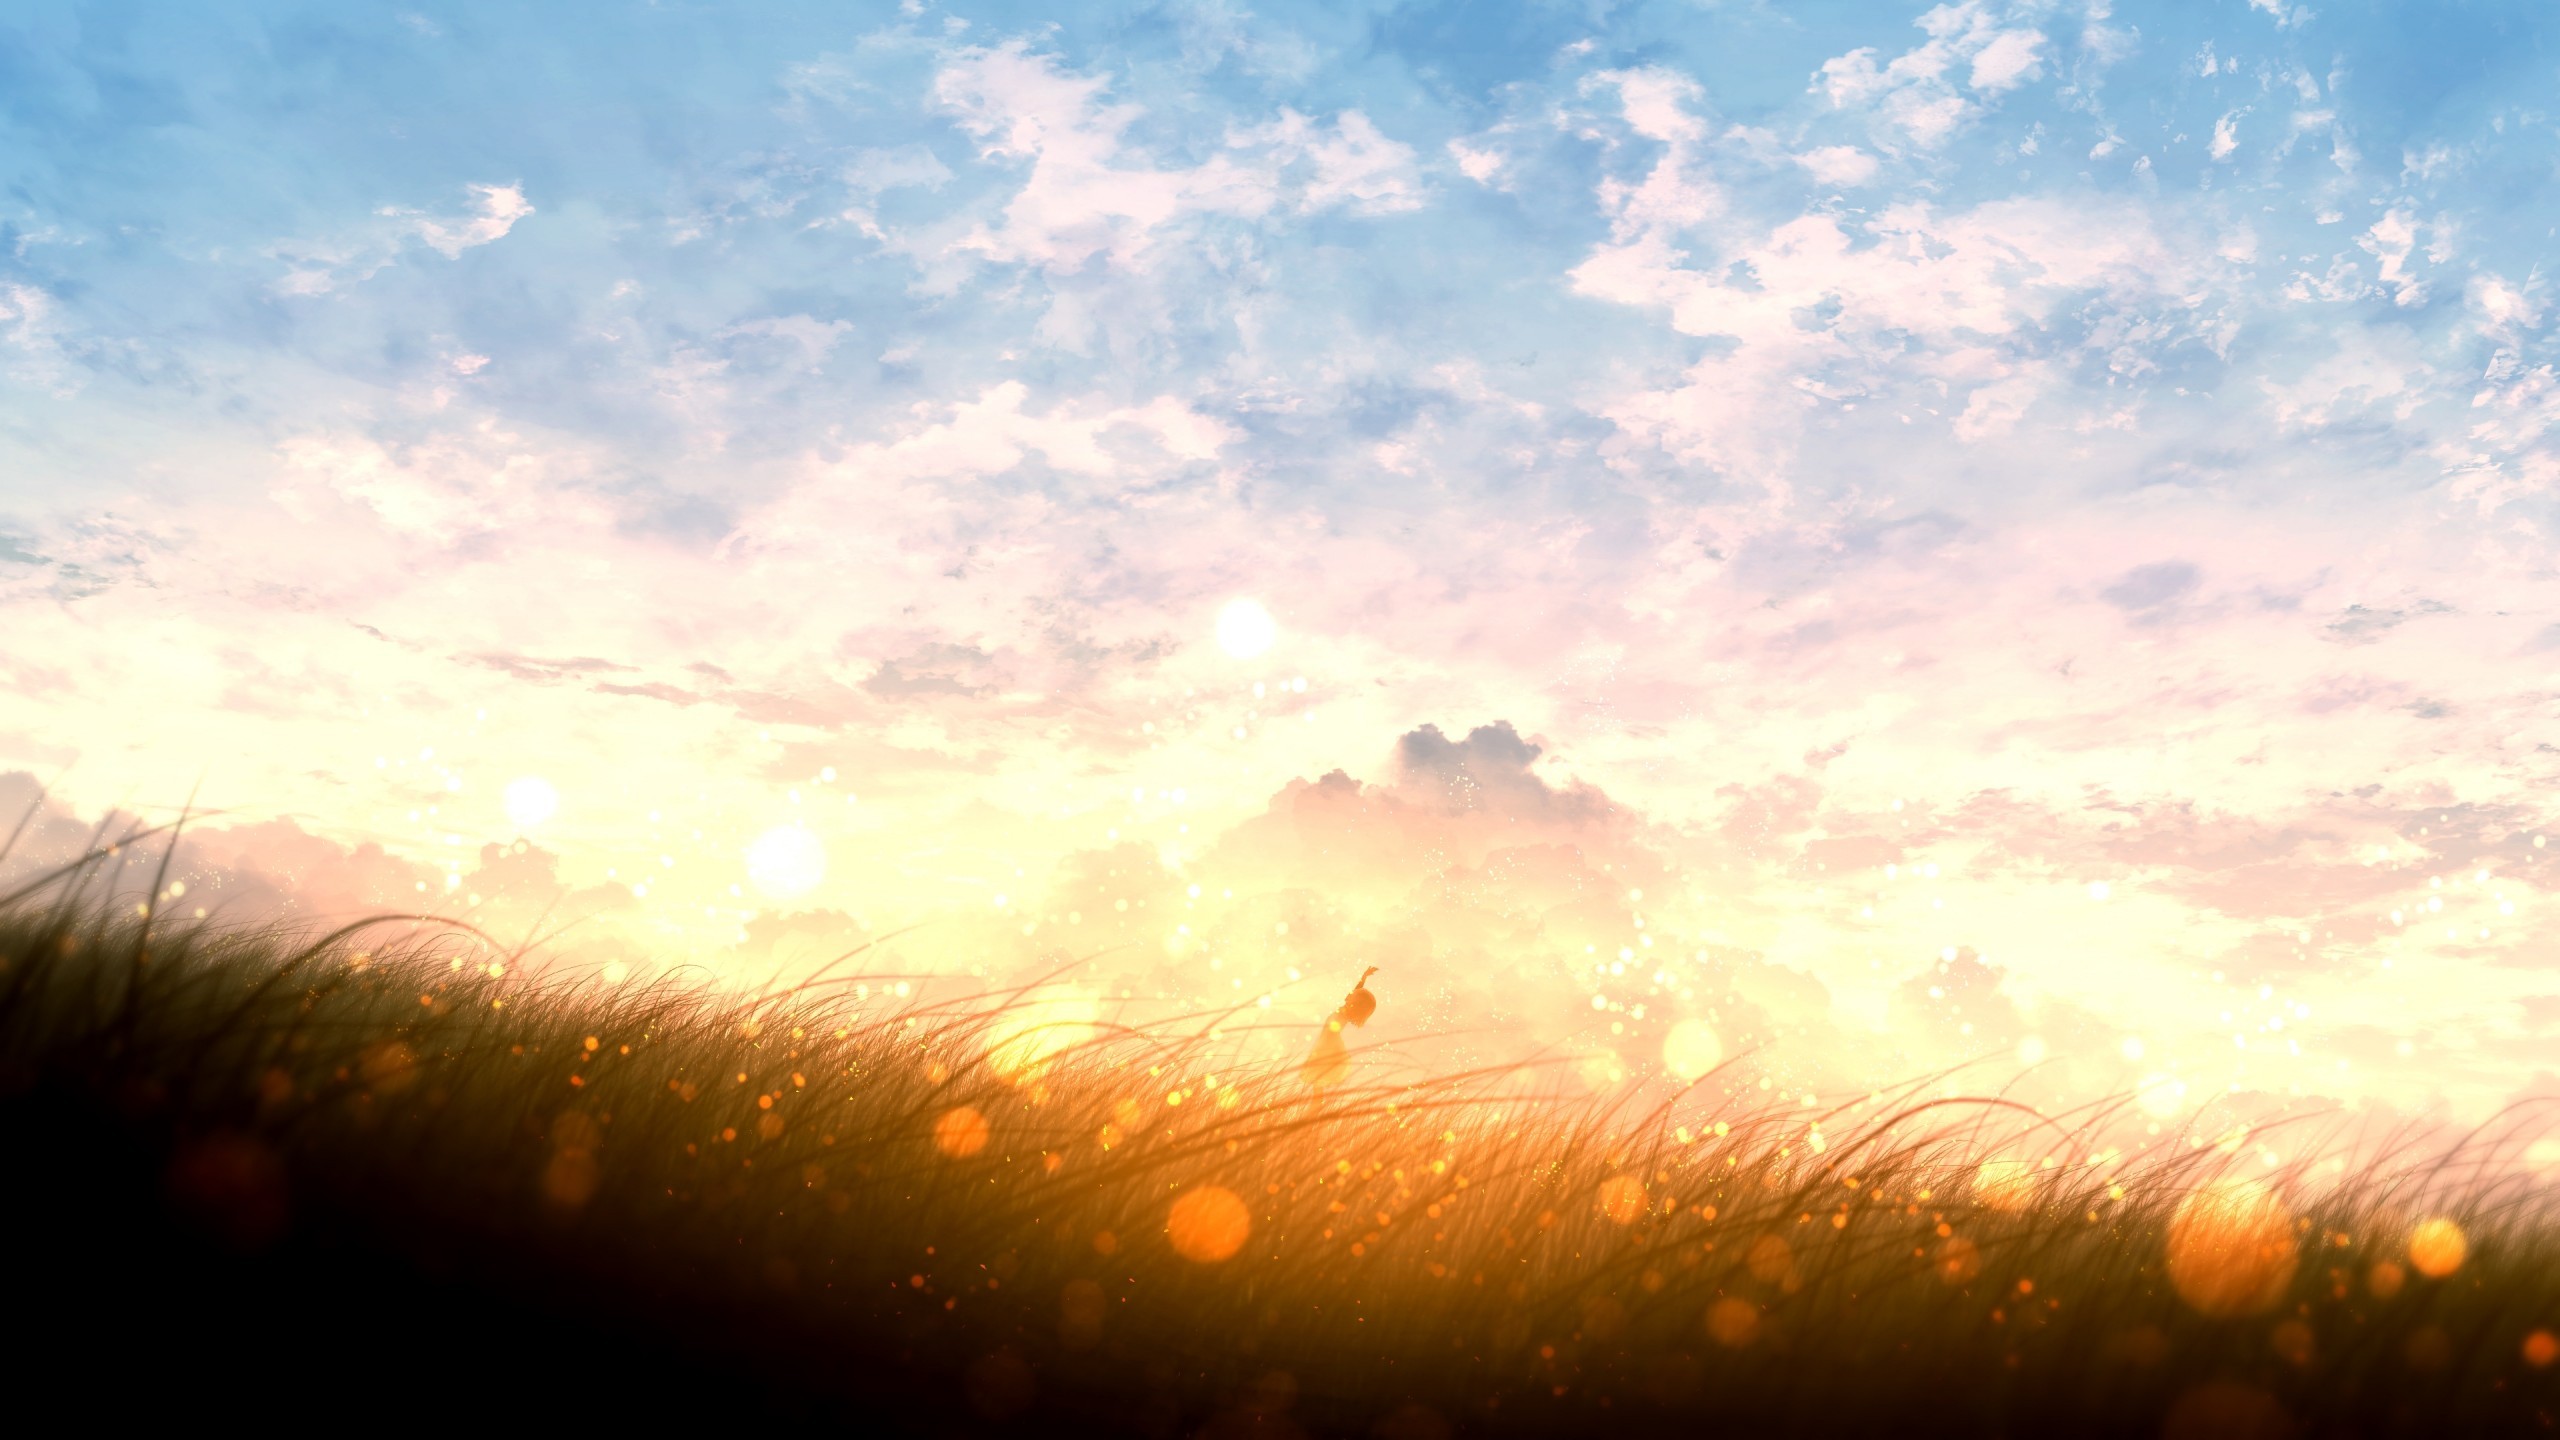 Anime Landscape Sunset Bokeh Field Clouds Plants 2560x1440 Wallpaper Teahub Io Flowers field, followed by 351 people on pinterest. anime landscape sunset bokeh field